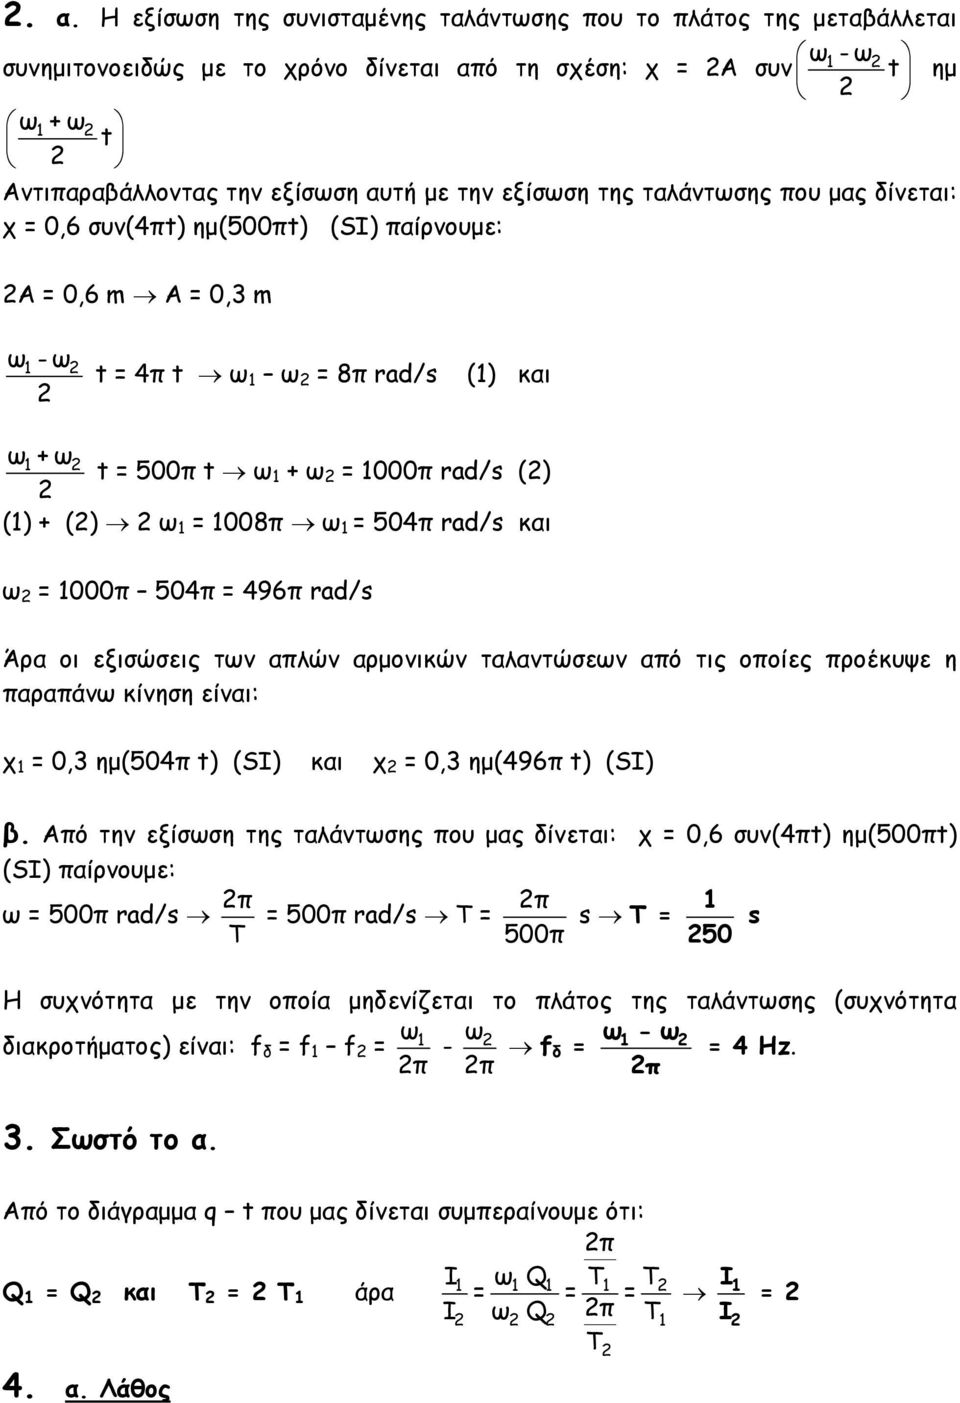 1008π ω 1 = 504π rad/s και ω = 1000π 504π = 496π rad/s Άρα οι εξισώσεις των απλών αρμονικών ταλαντώσεων από τις οποίες προέκυψε η παραπάνω κίνηση είναι: χ 1 = 0,3 ημ(504π t) (SI) και χ = 0,3 ημ(496π